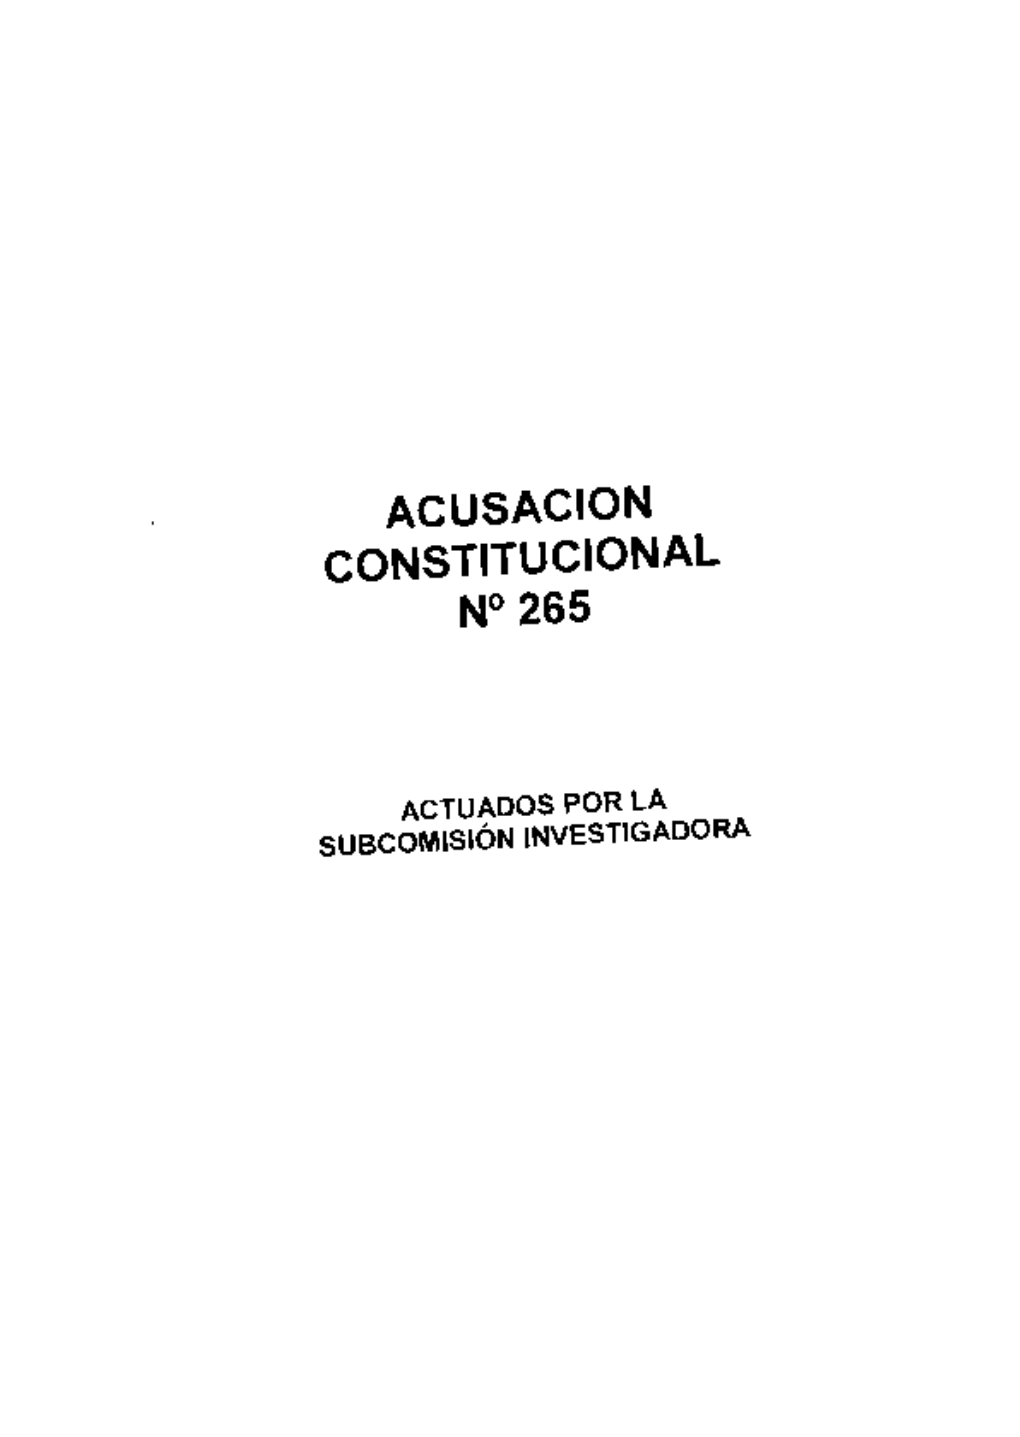 Acusacion Constitucional N° 265